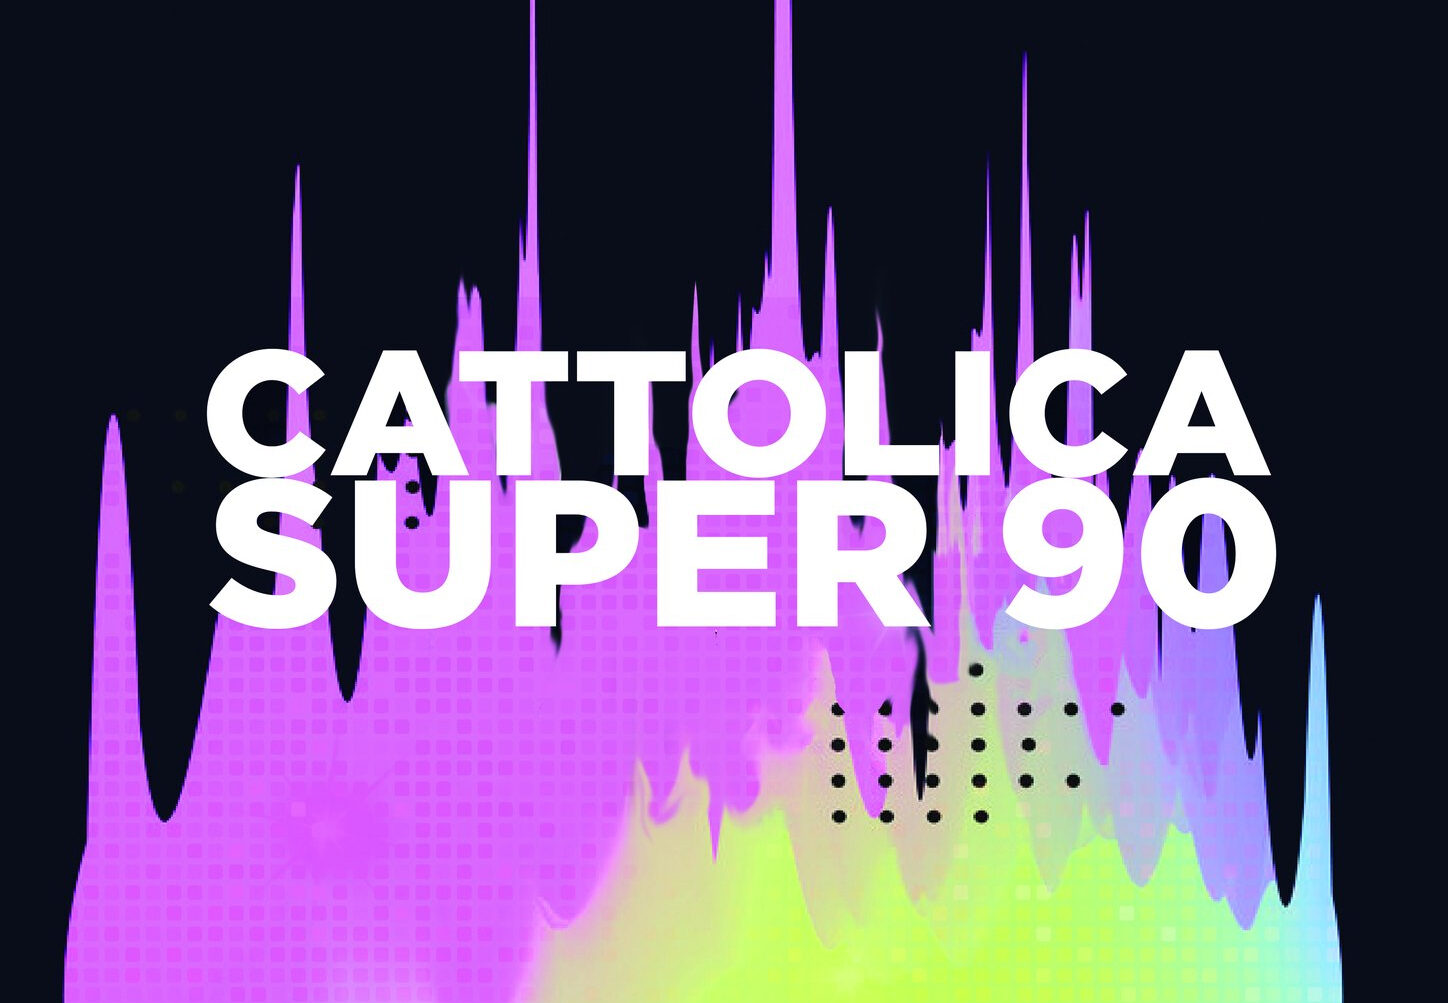 Cattolica super90